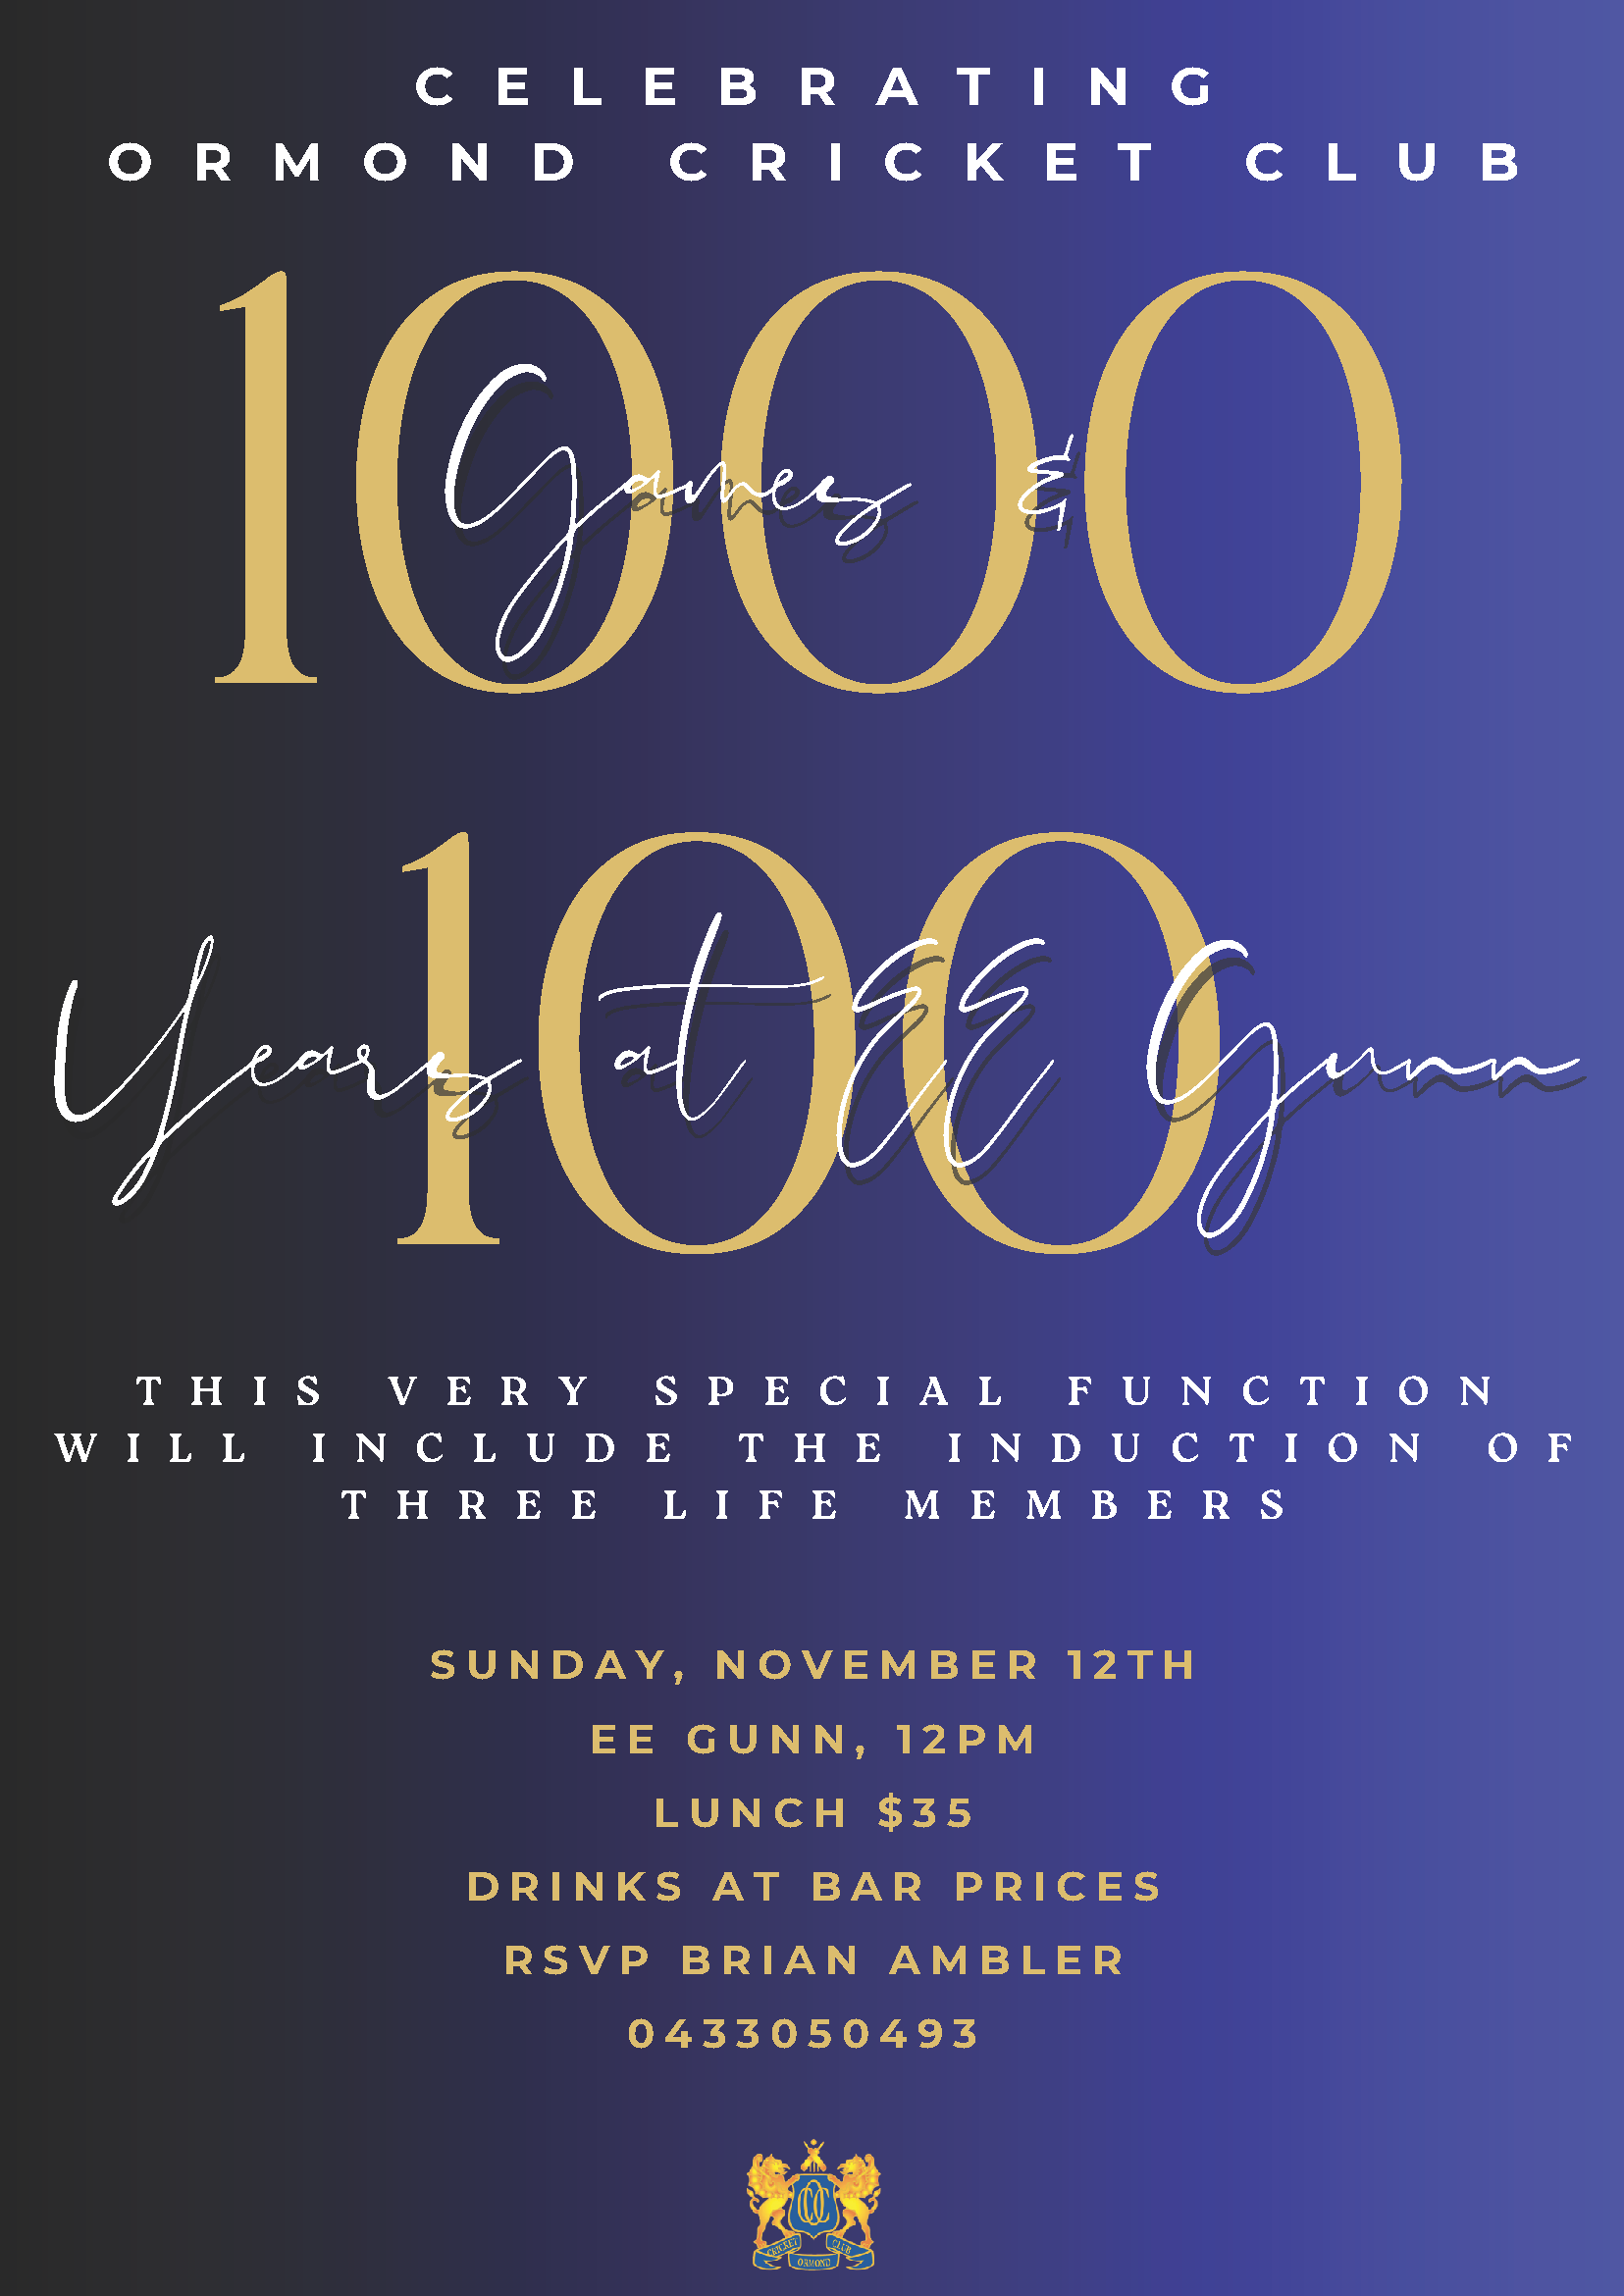 1000 Games & 100 Years at EE Gunn